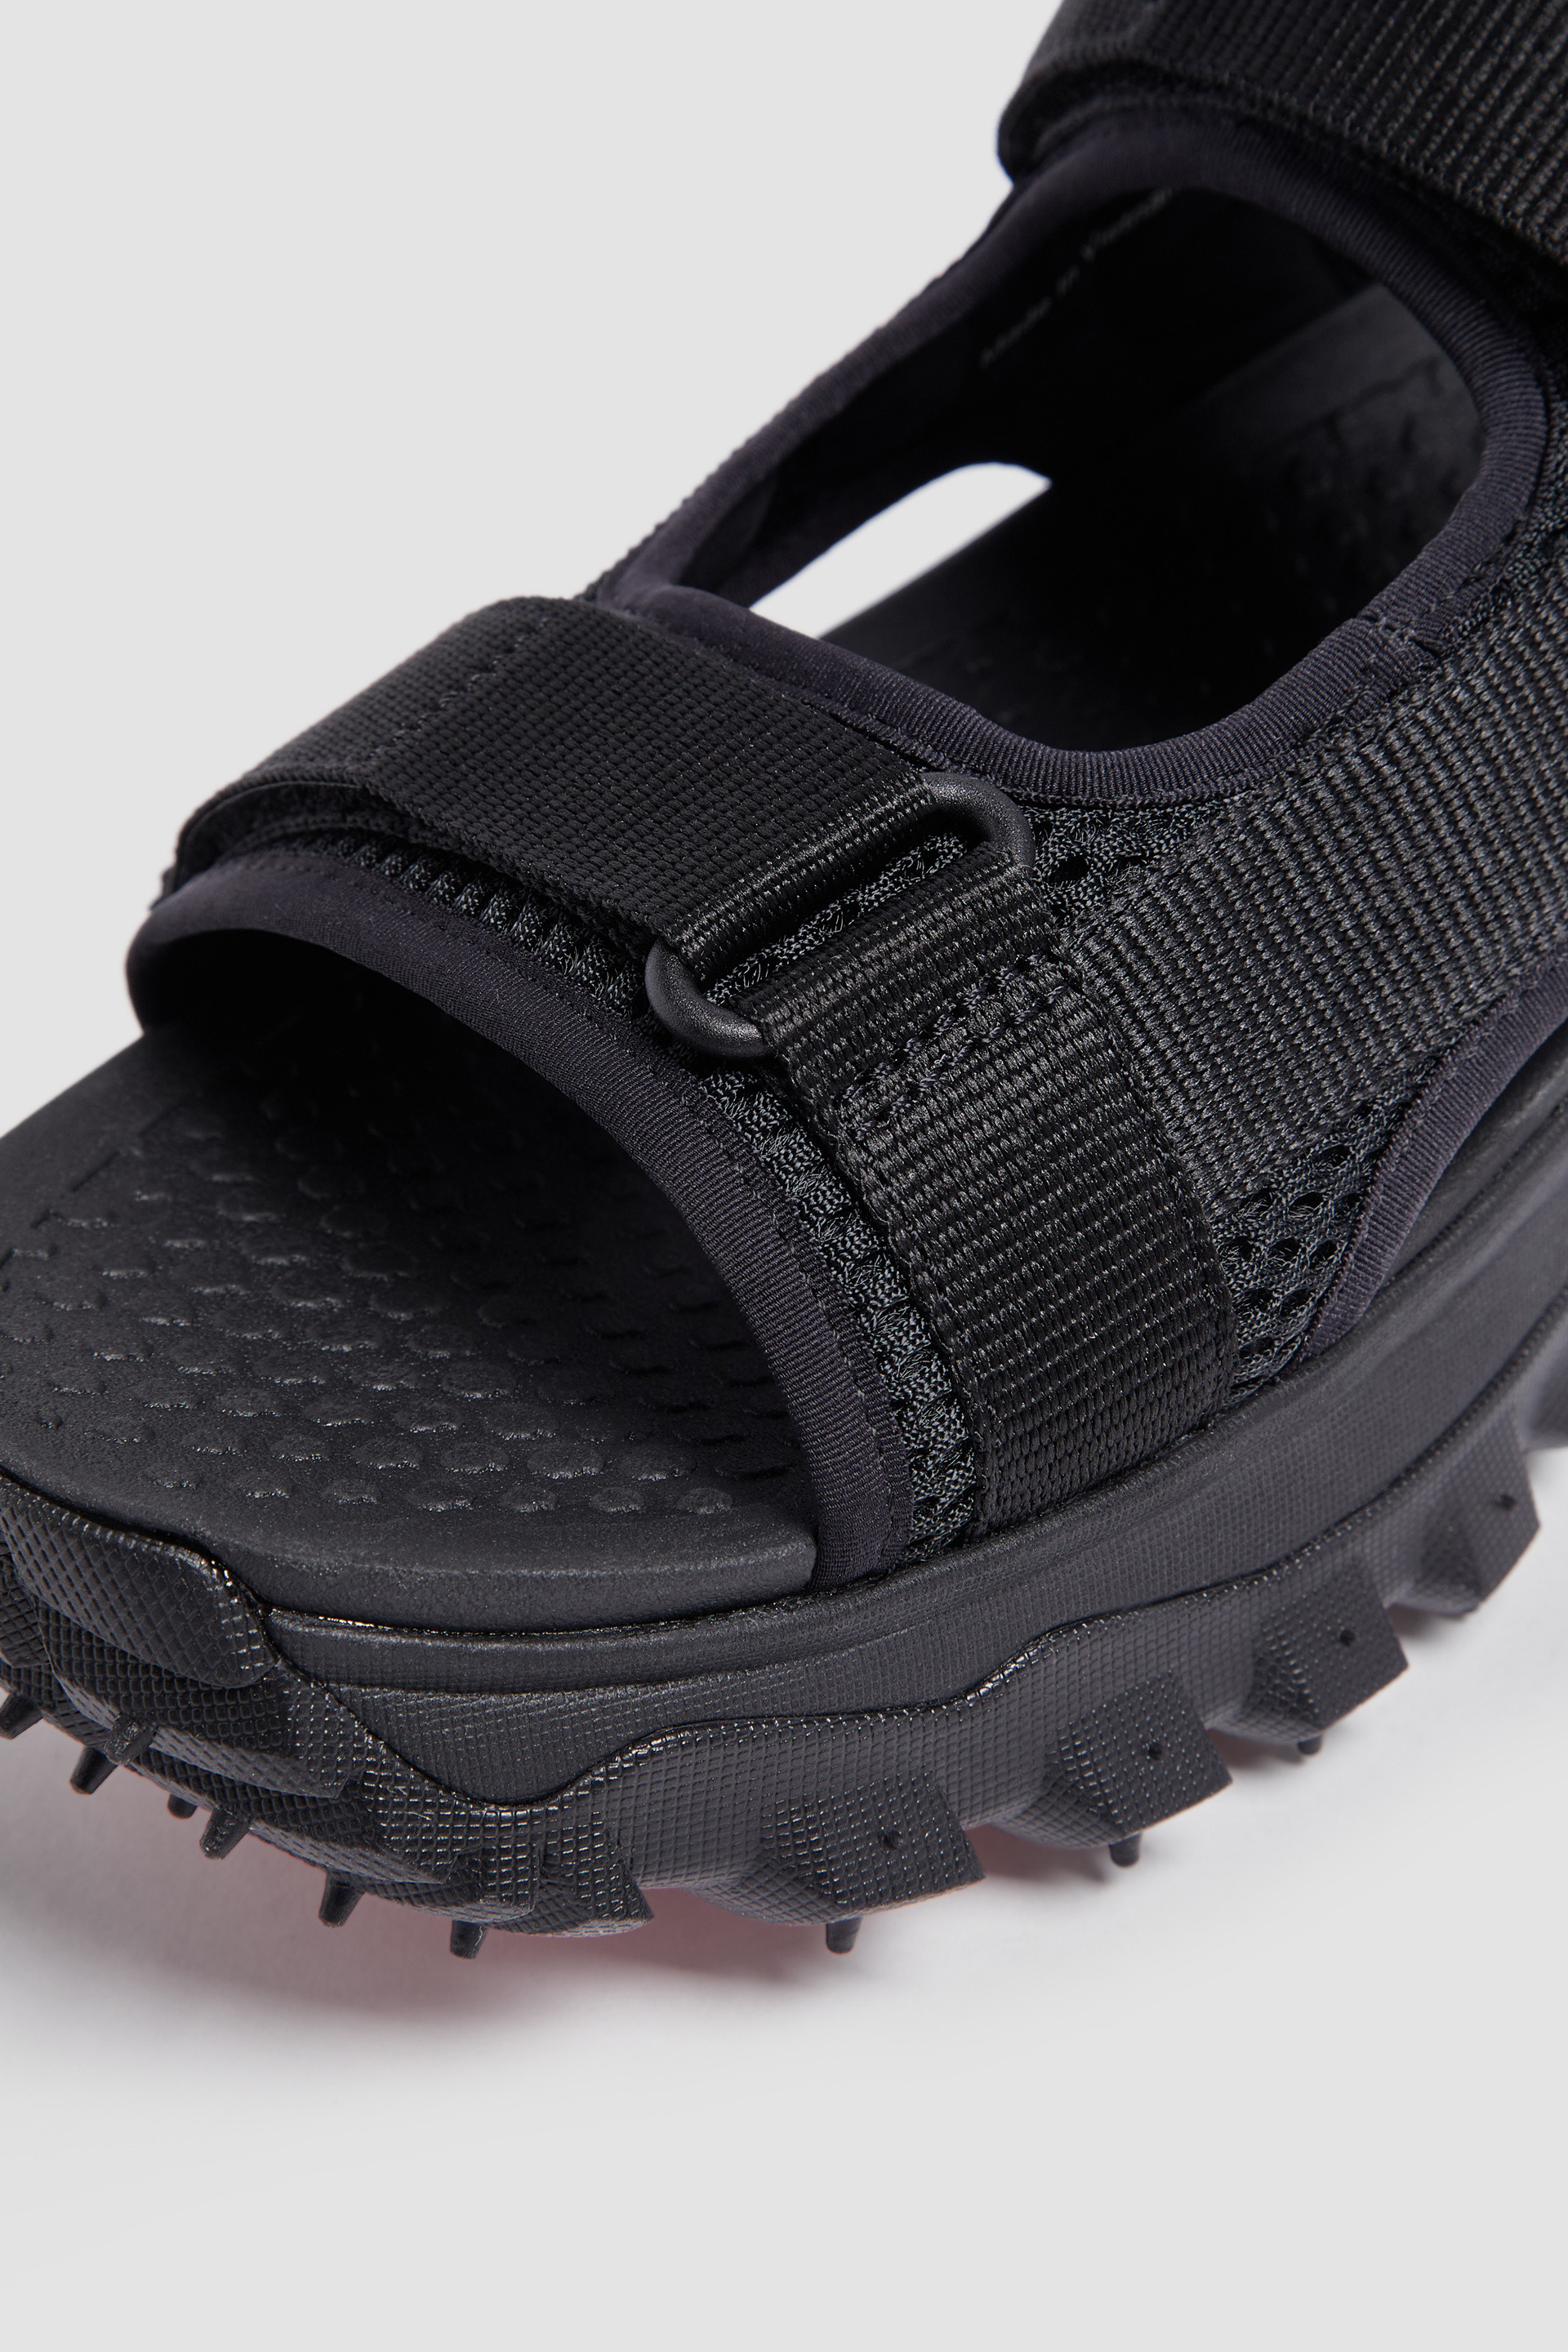 Sandals & Sliders for Men - Shoes | Moncler US